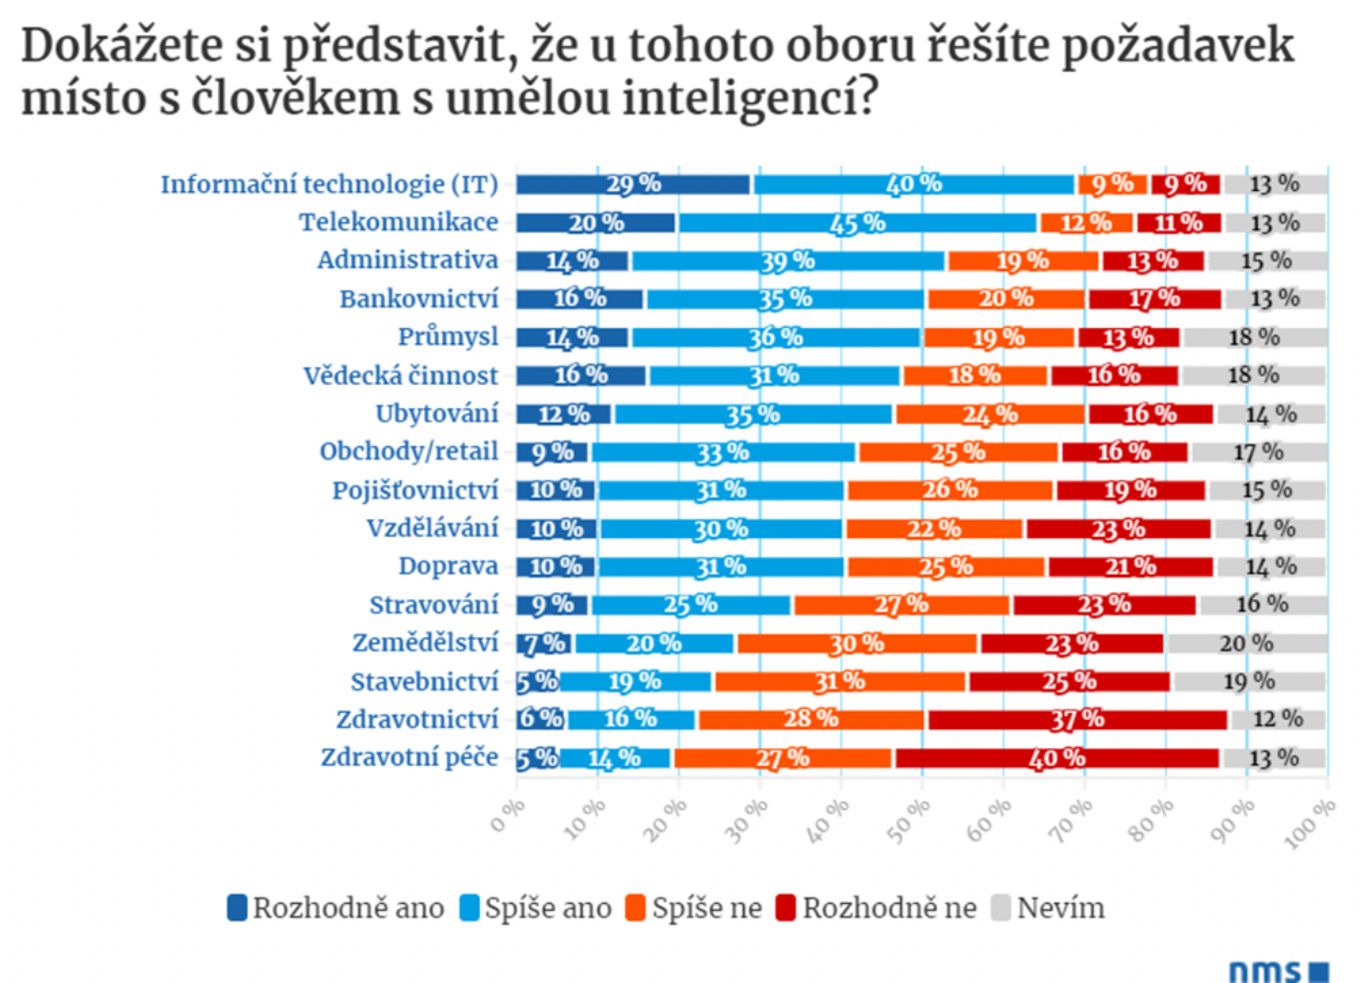 IMAGE: Jen 15 procent Čechů se obává, že je umělá inteligence nahradí v jejich práci Doručená pošta